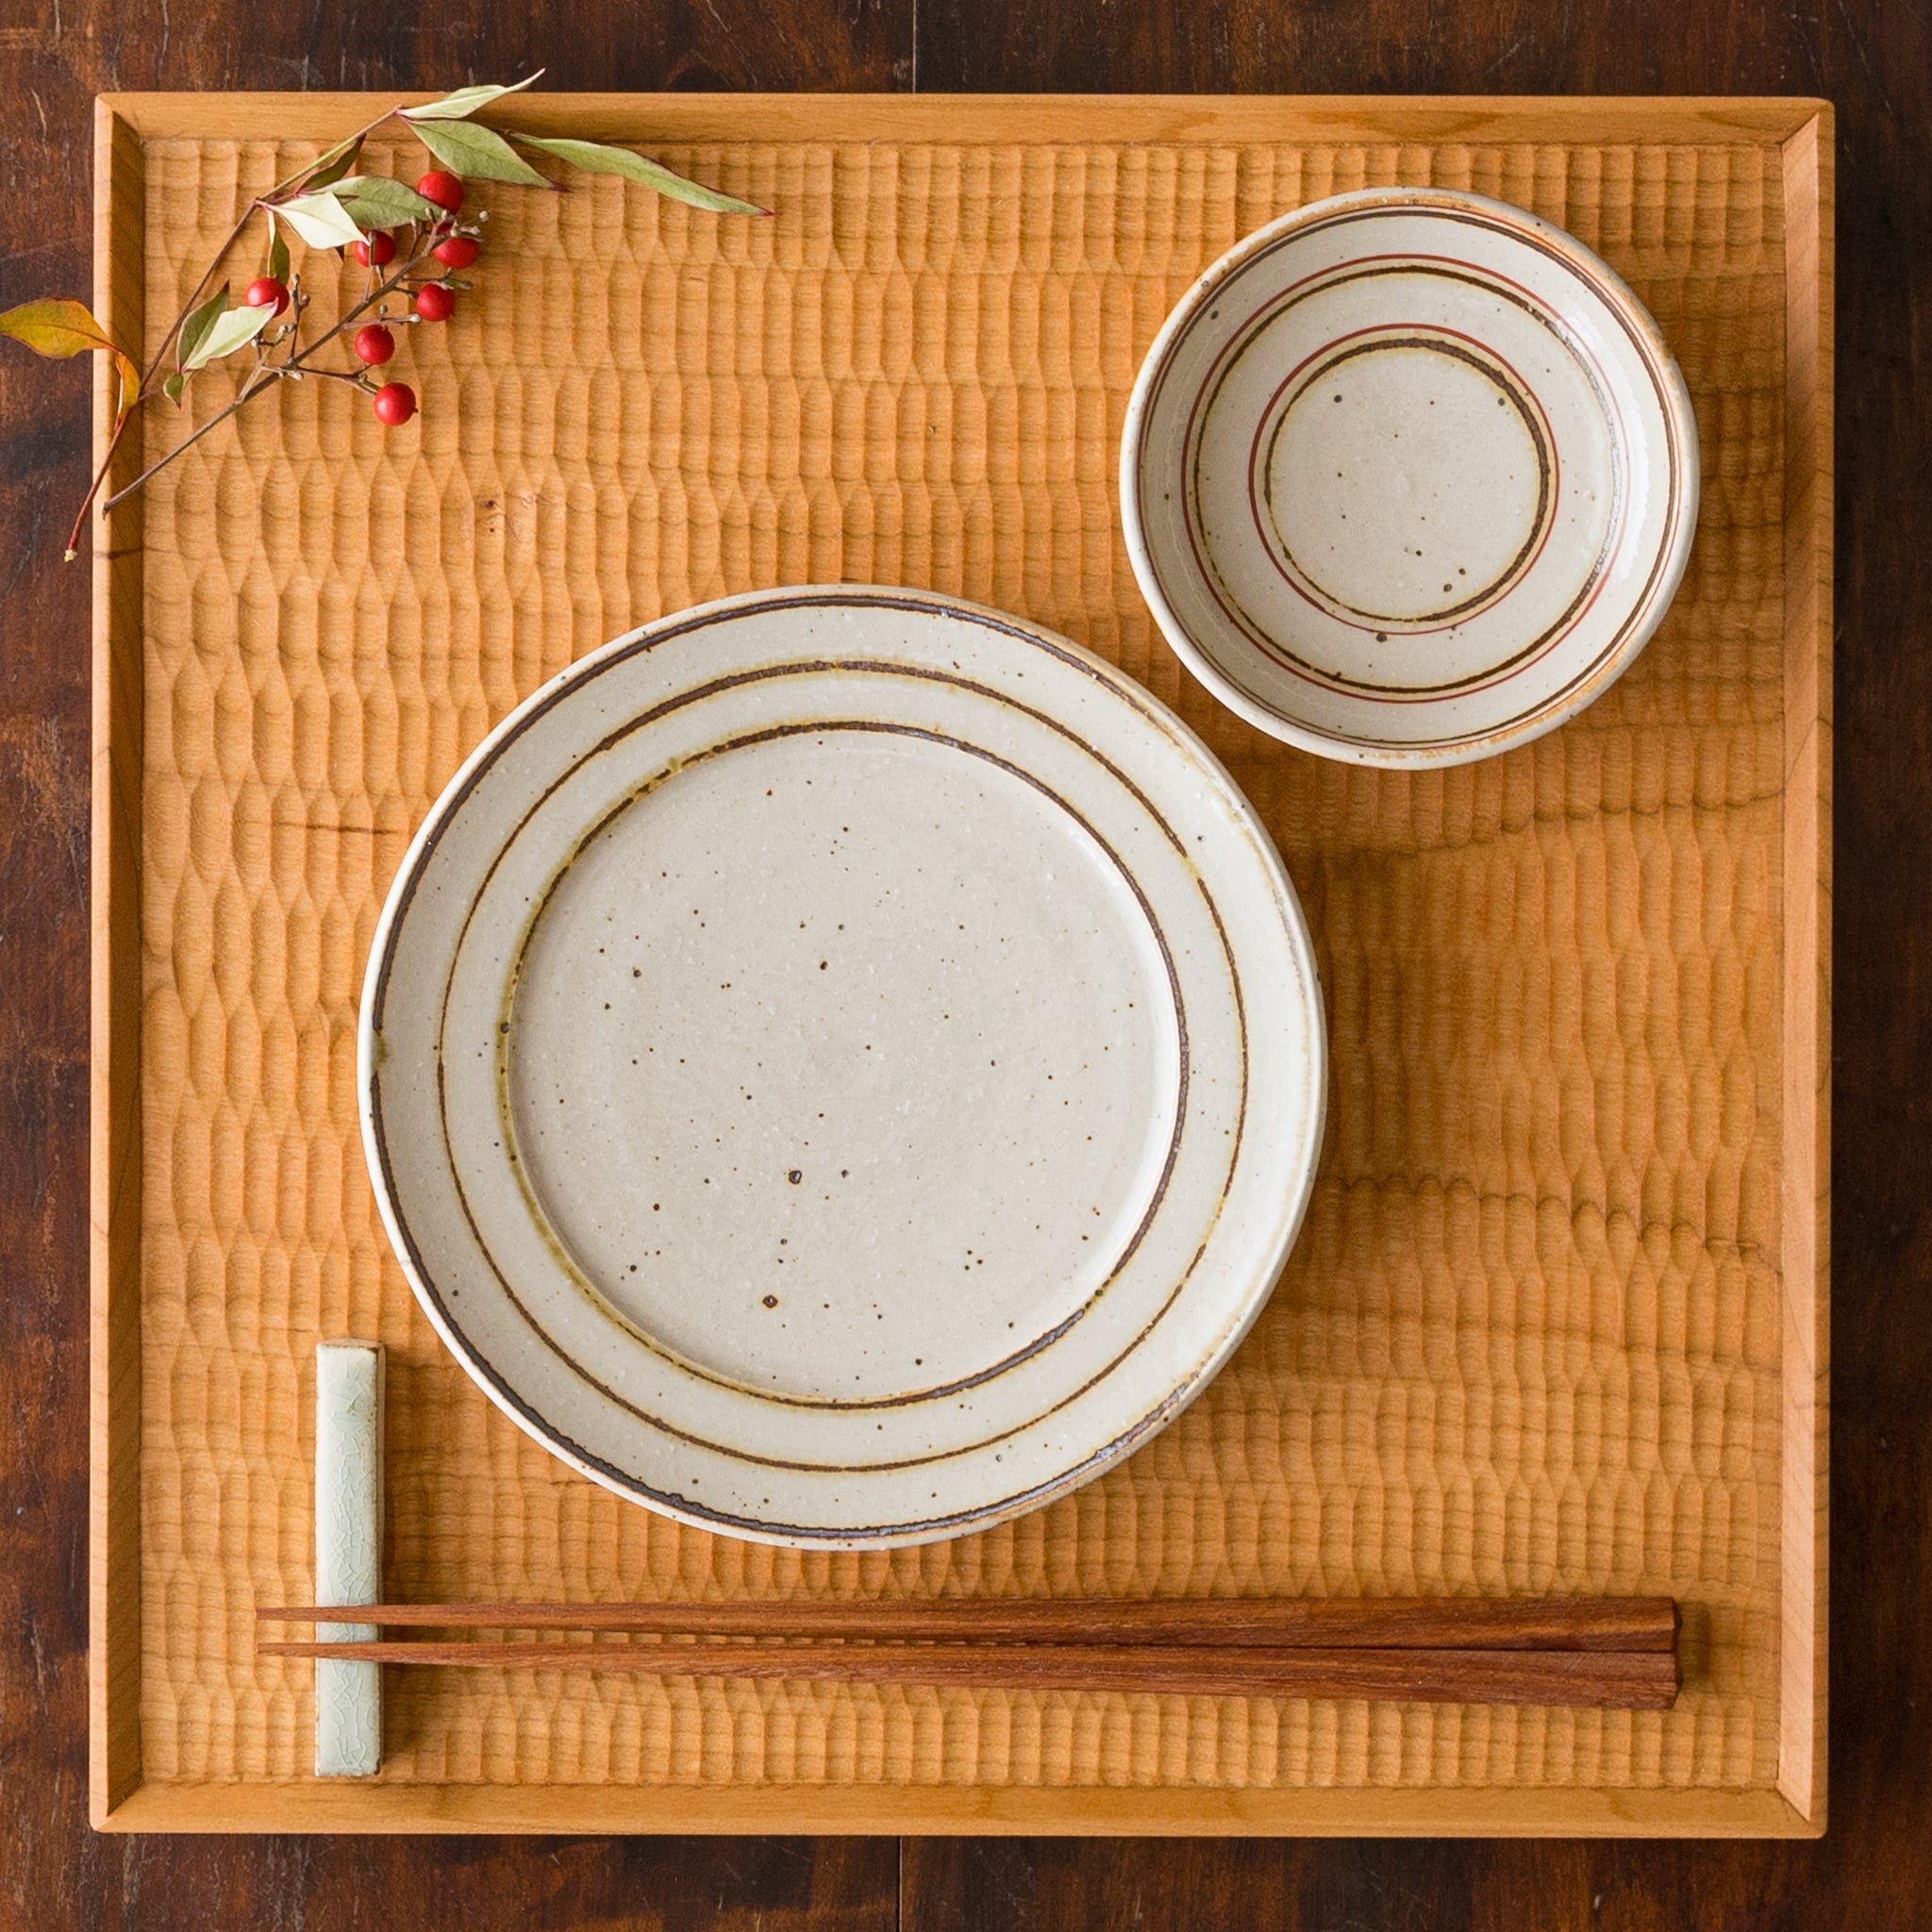 盛り付けたお料理が素敵に映える冨本大輔さんの灰釉鉄絵5寸リム皿と3寸皿